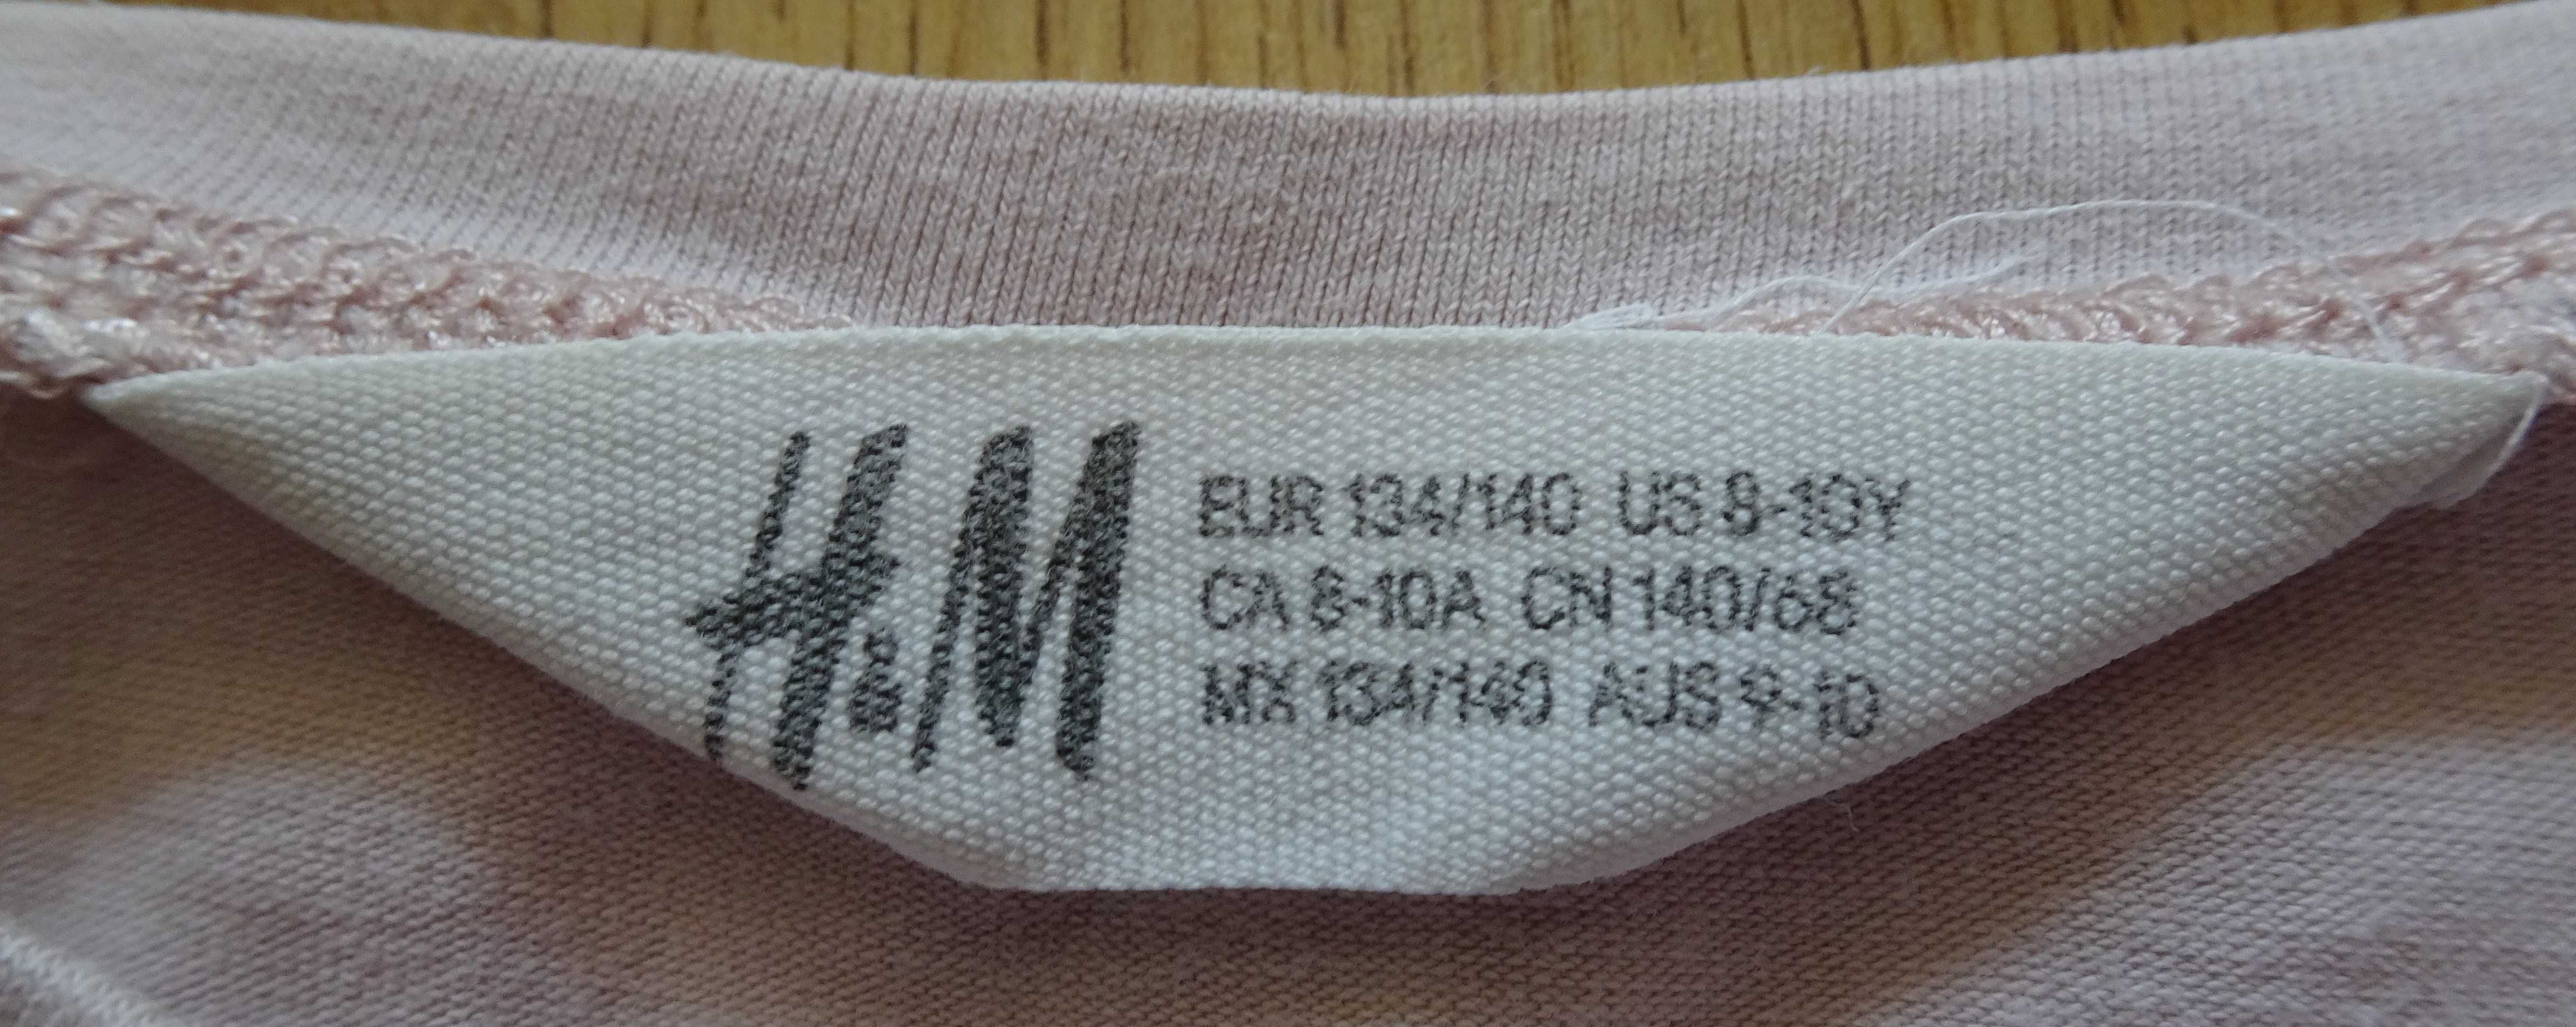 H&M bluzka dziewczęca 9/10 lat rozmiar 134/140